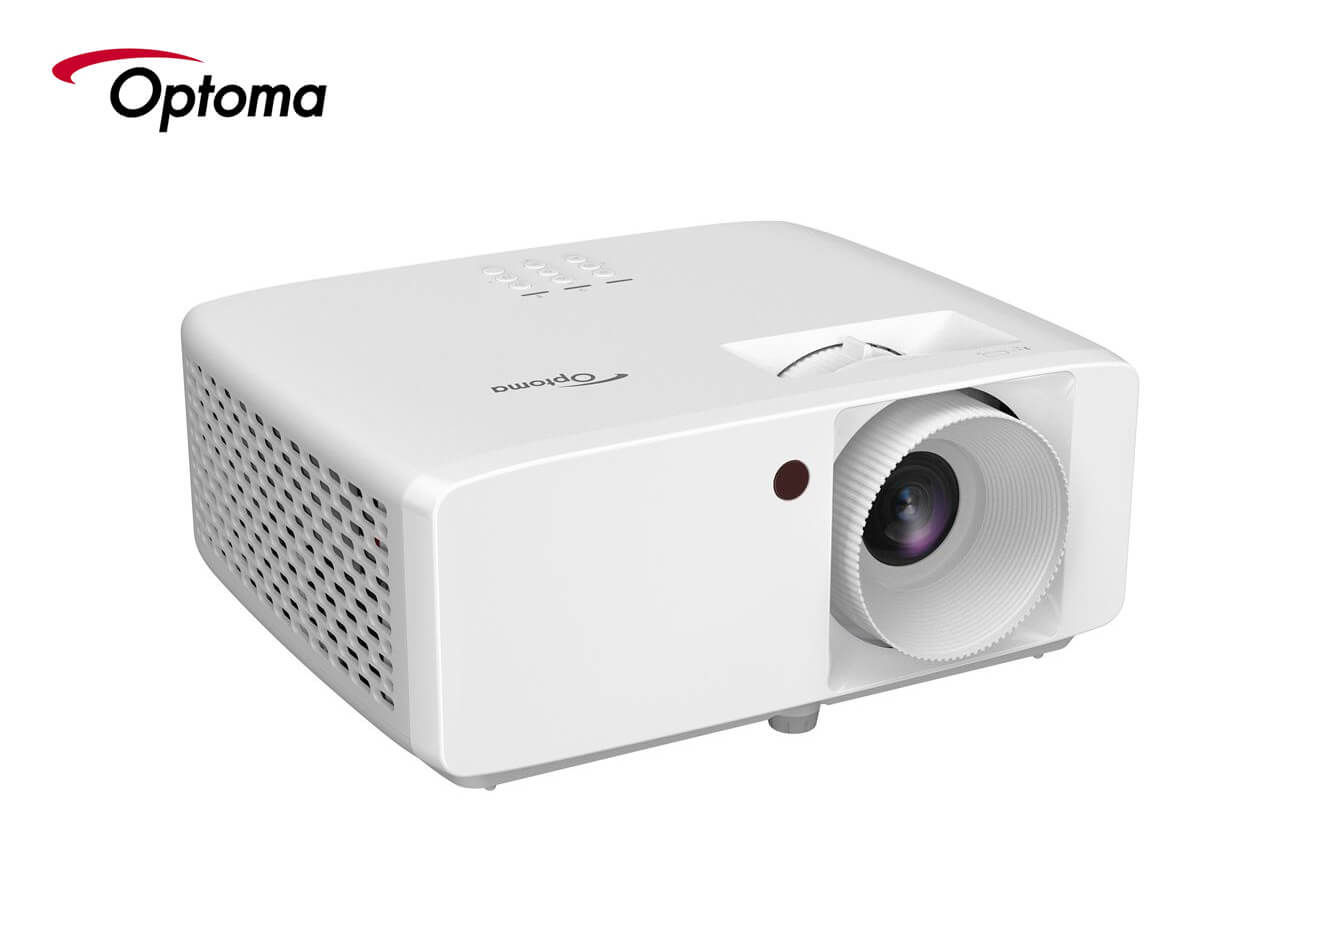 Videoproiector OPTOMA HZ146X, Full HD 1920 x 1080, 3800 lumeni, contrast 2.000.000:1